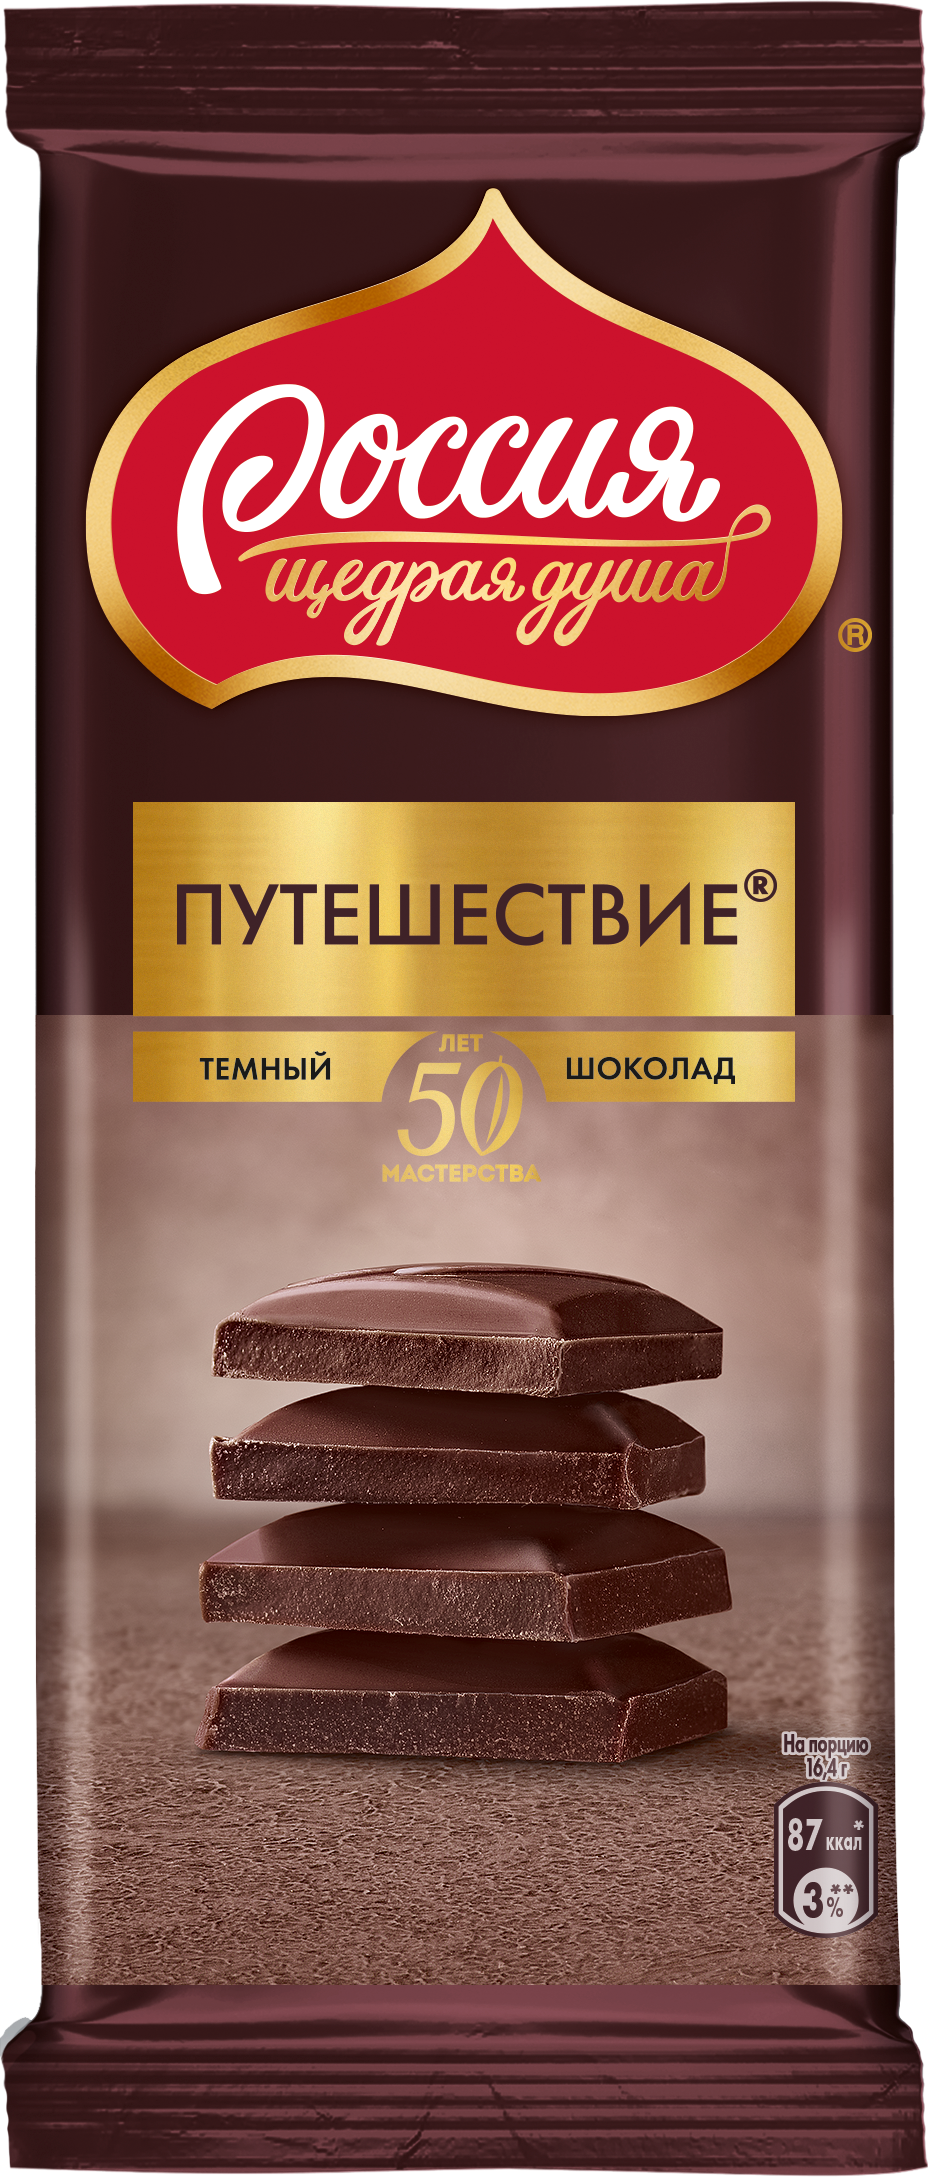 Темный шоколад Россия - щедрая душа Путешествие, 5 шт по 82 г